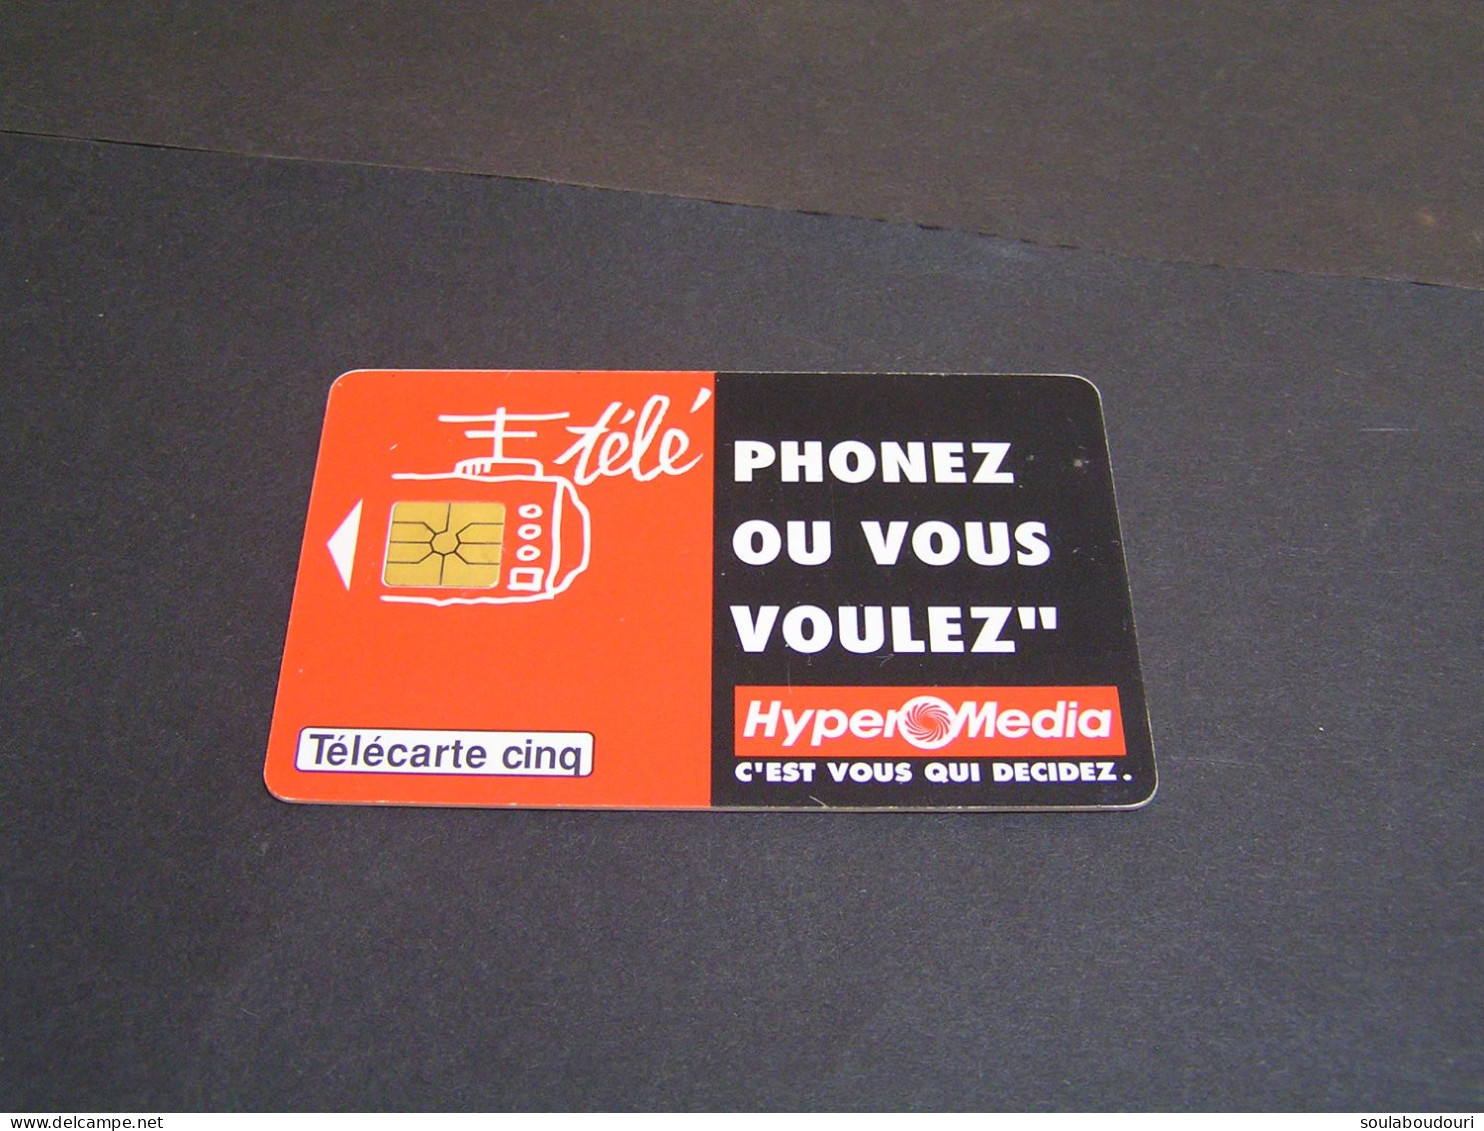 FRANCE Phonecards Private Tirage .16.000 Ex 04/94... - 5 Einheiten